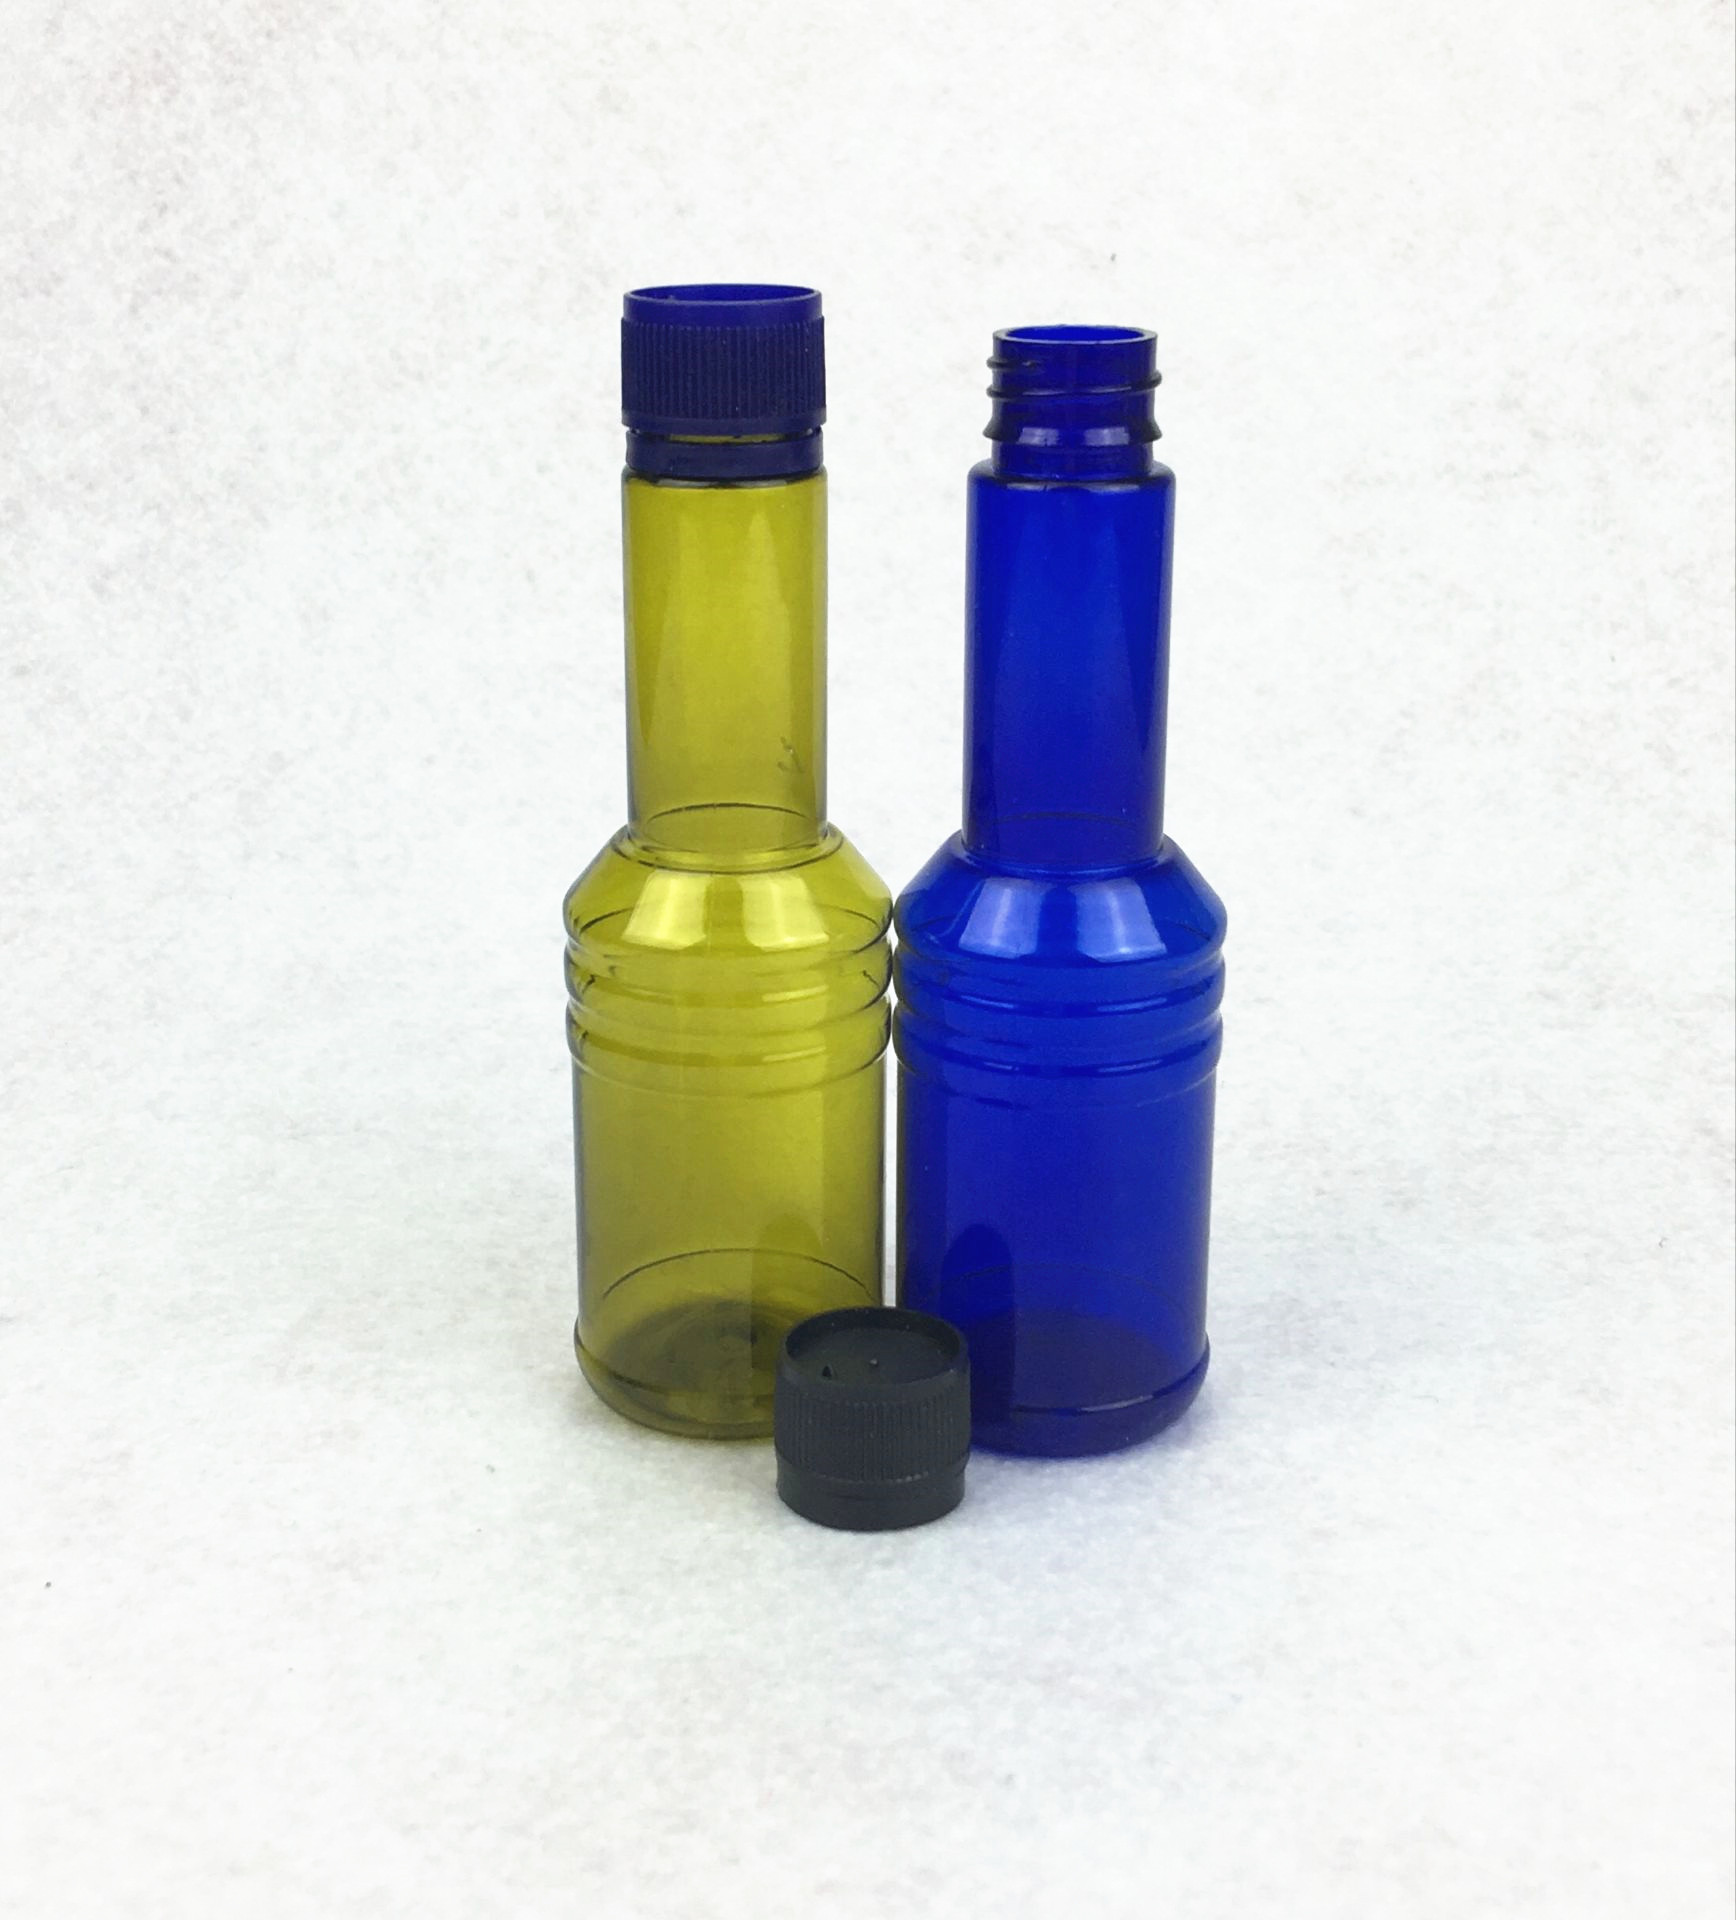 50ml 圆形燃油添加剂瓶 PET润滑油瓶 防冻剂瓶